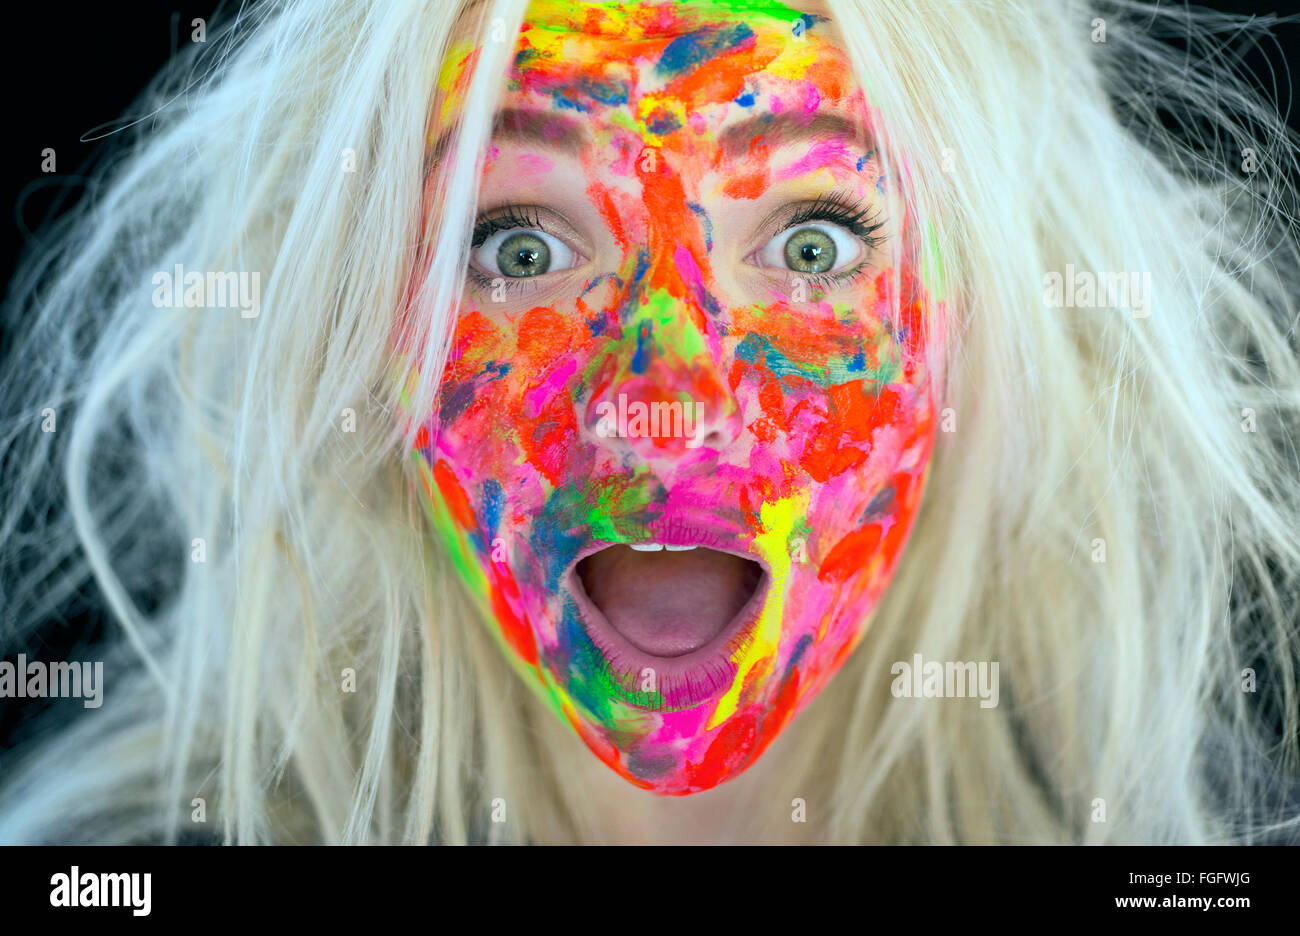 Femme aux cheveux blonds en désordre et le visage couvert de peinture multicolores avec une expression surprise Banque D'Images